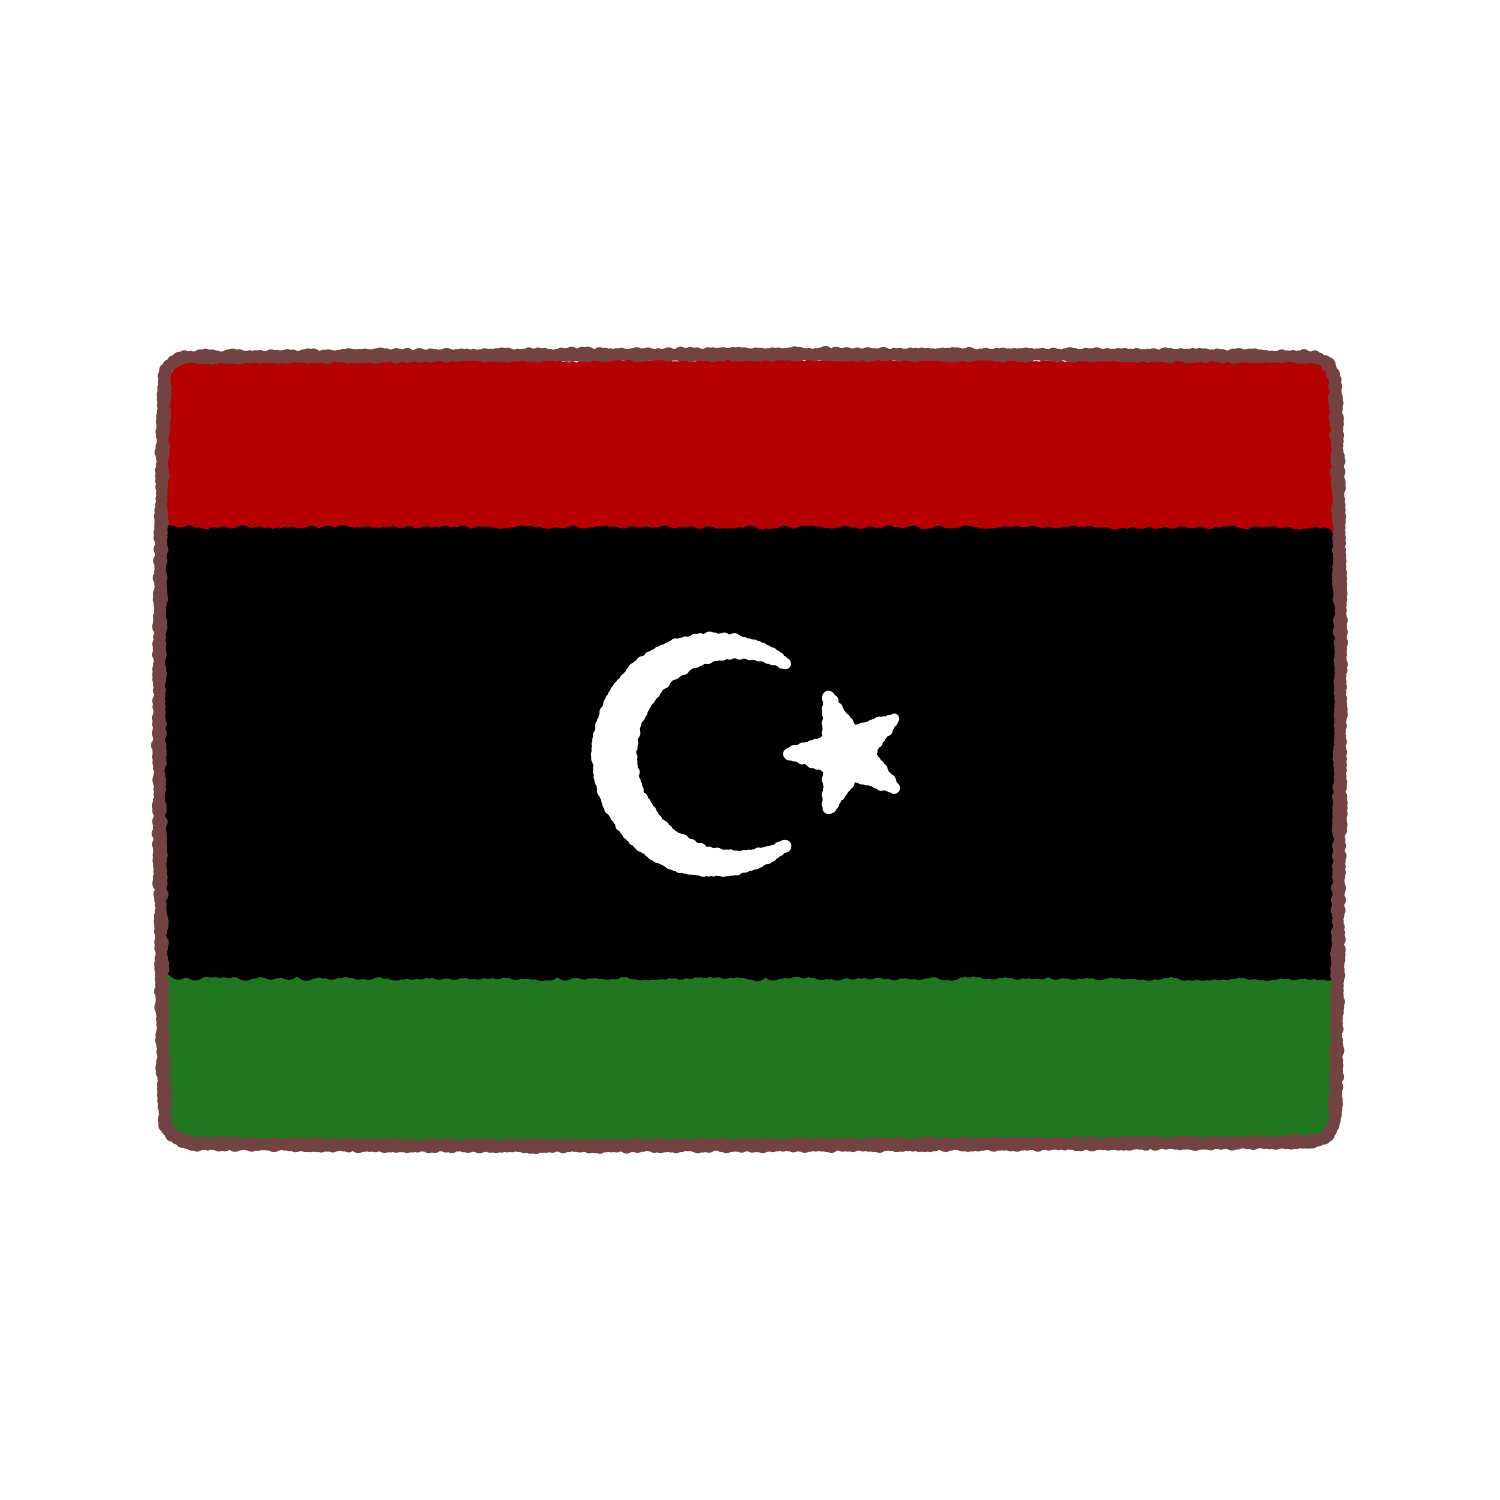 リビア国旗のイラスト